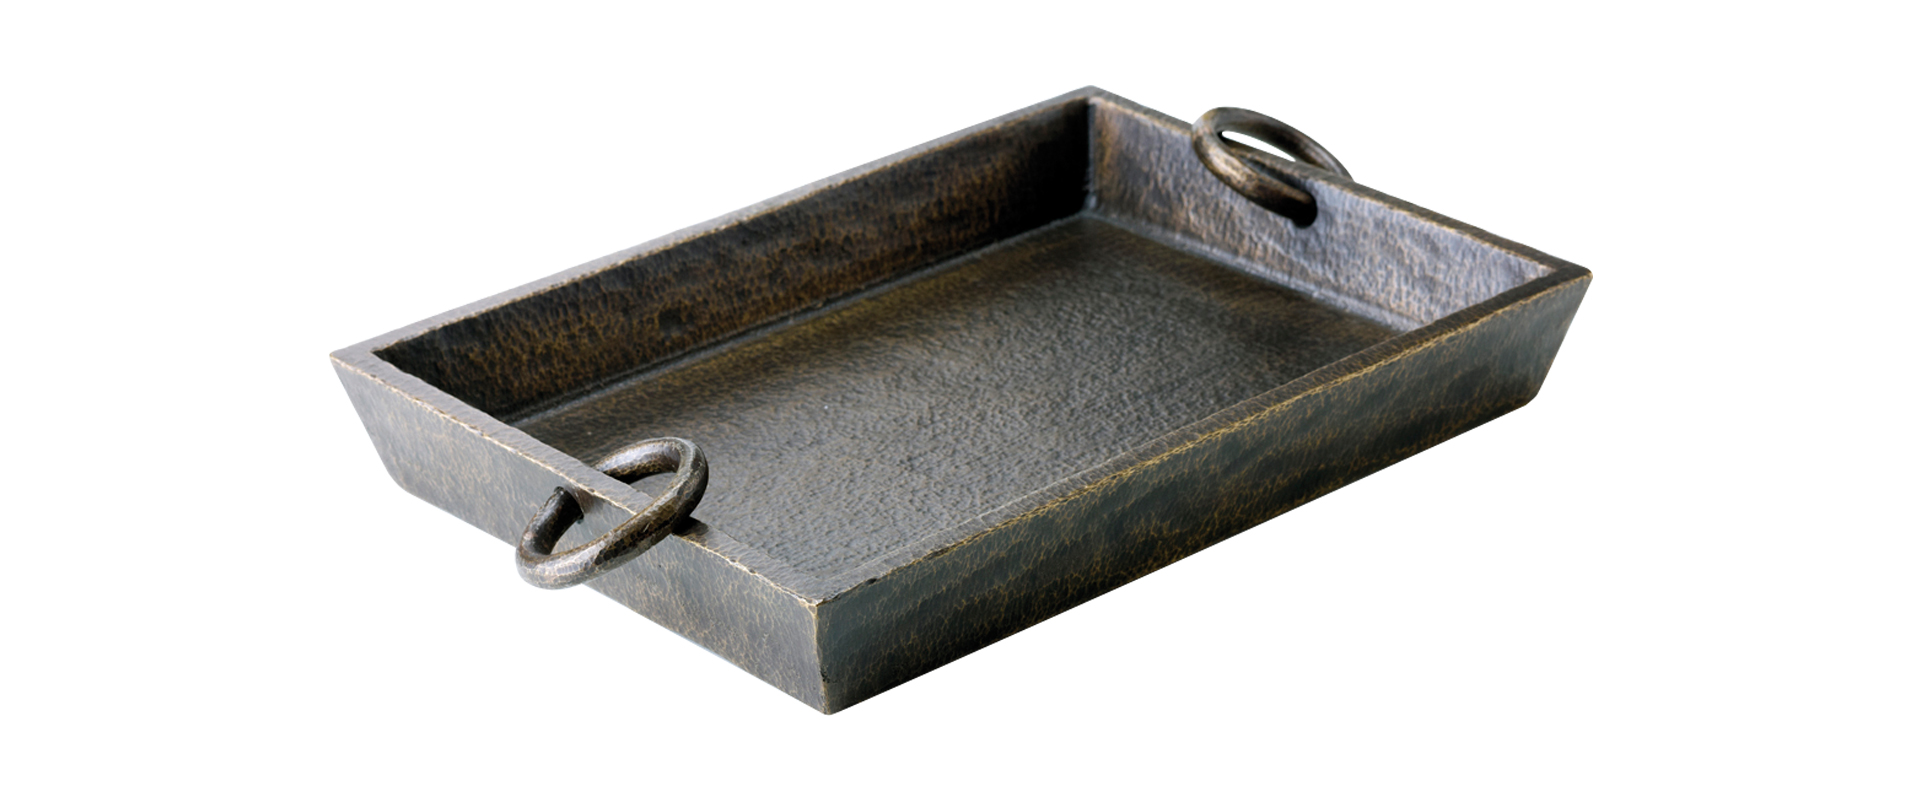 Vuotatasche è un piccolo portaoggetti in bronzo, del catalogo di Promemoria | Promemoria